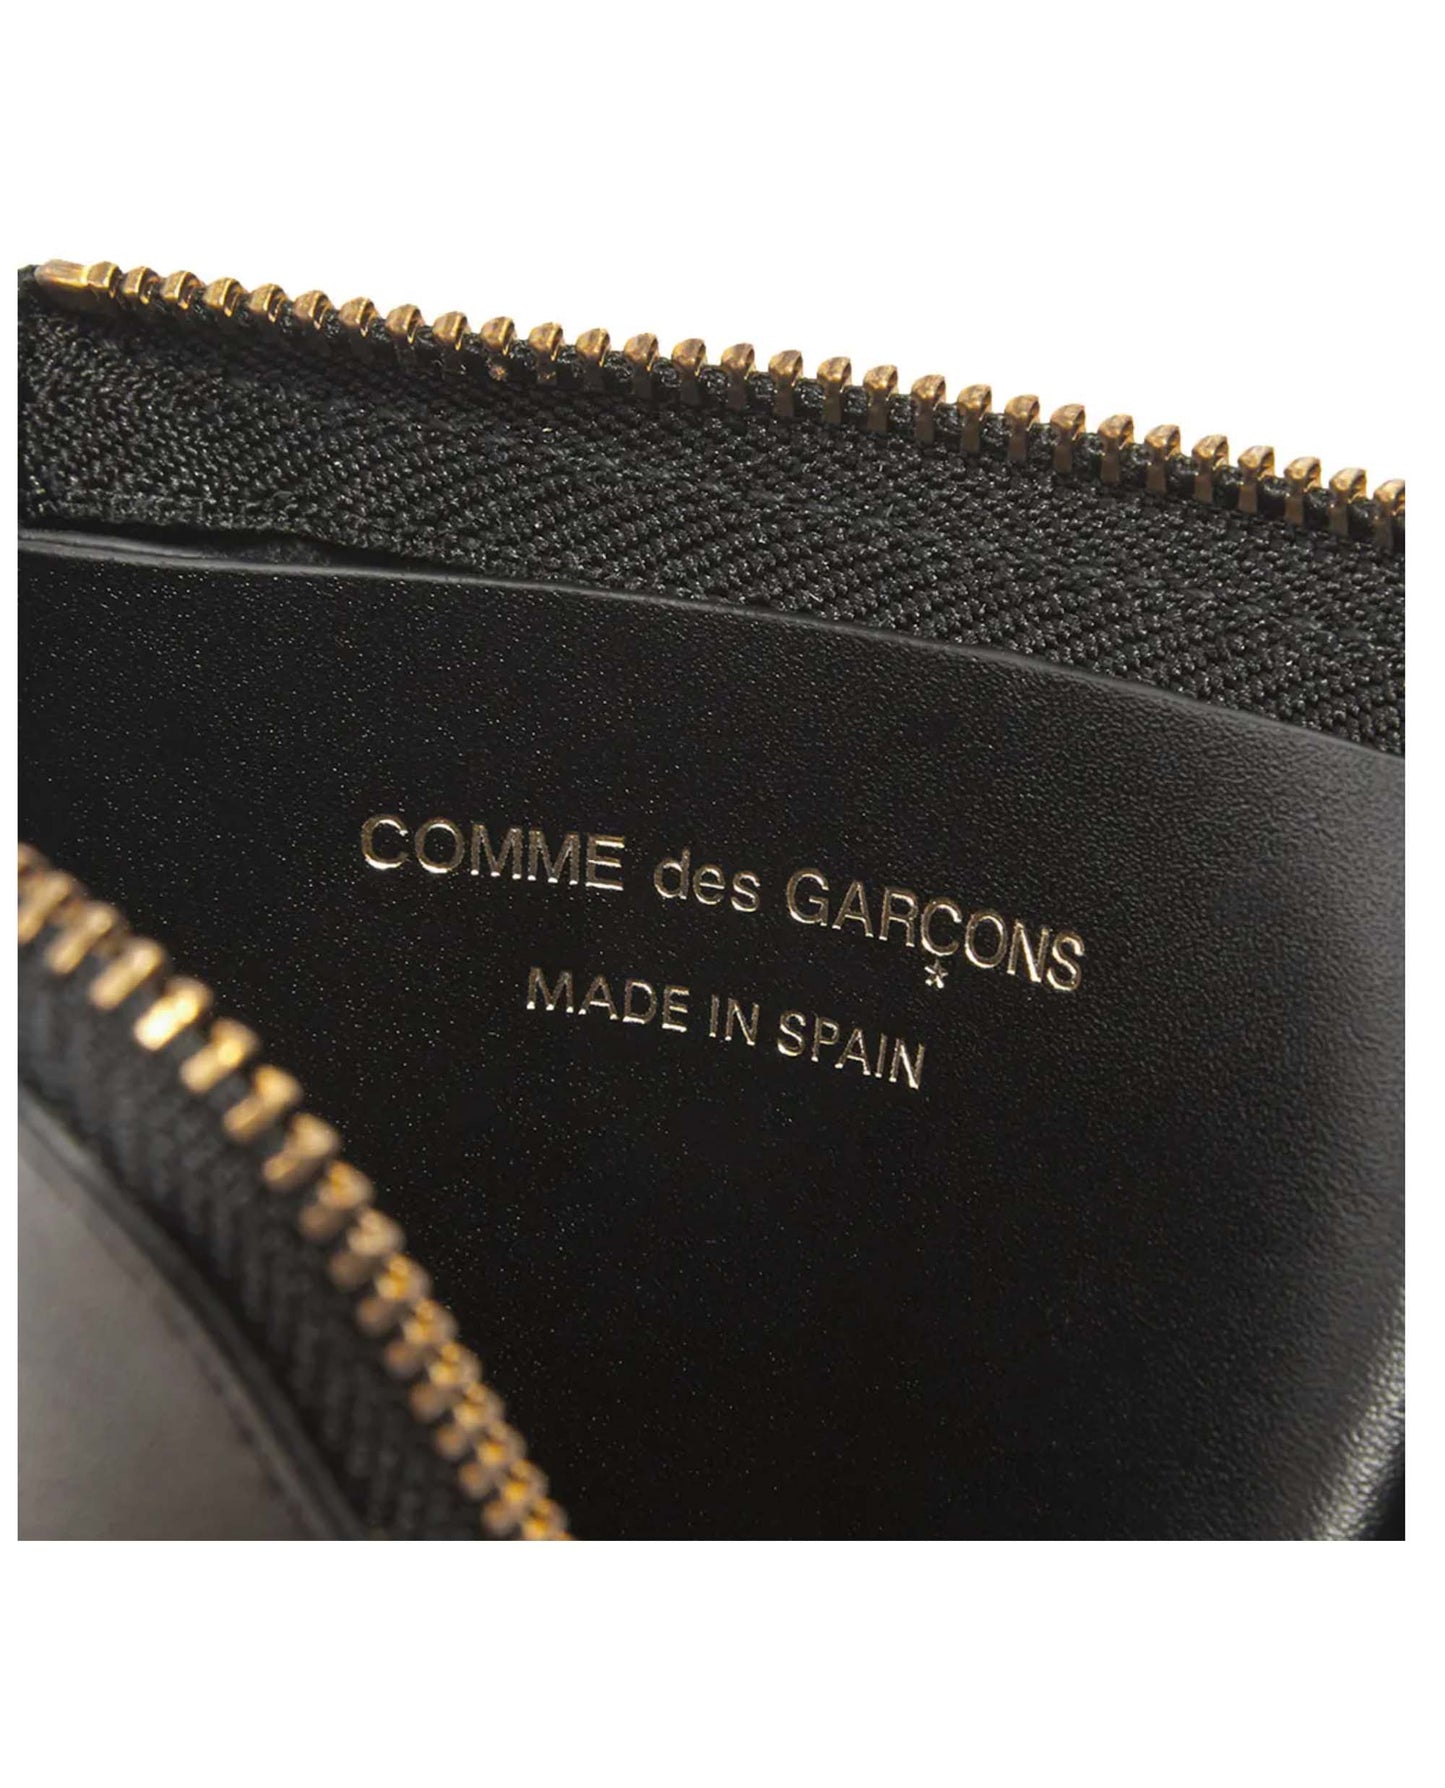 
                    
                      Comme Des Garcons Classic Leather Line
                    
                  